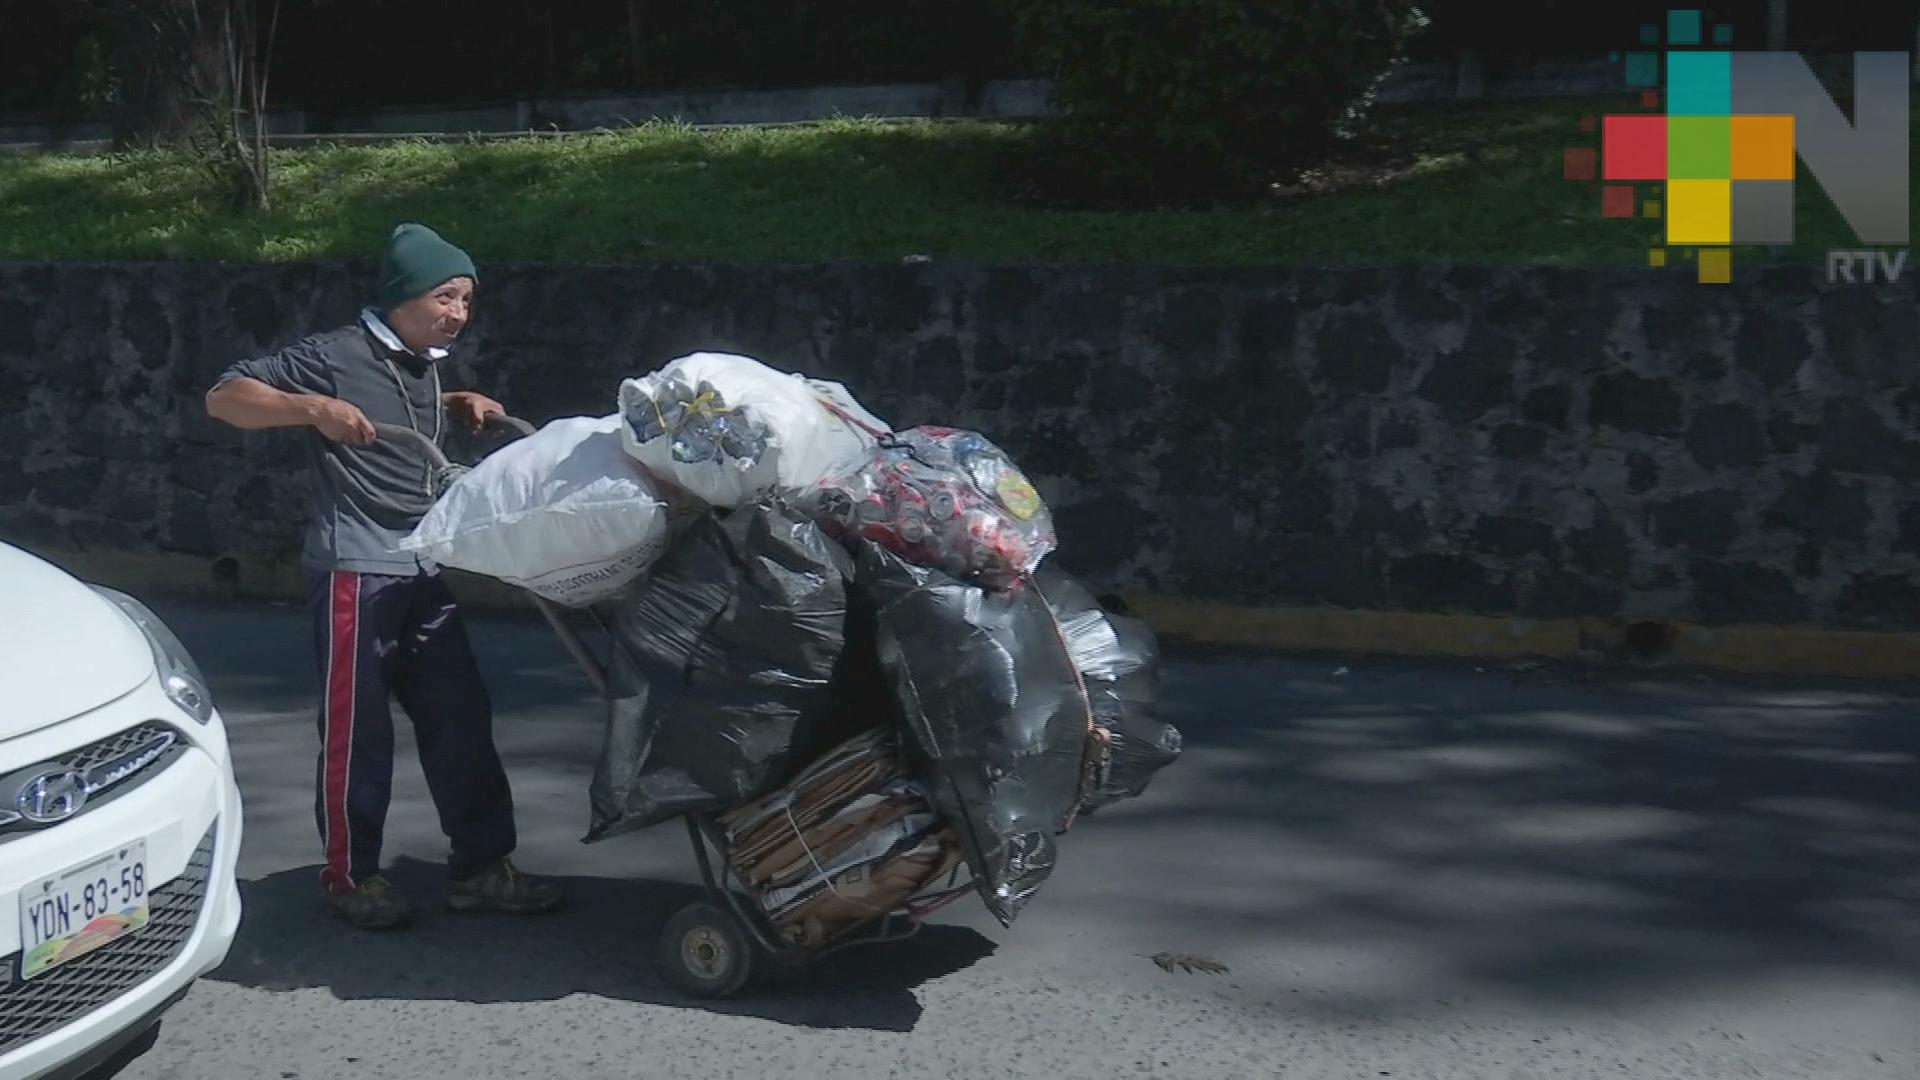 Centros de transferencia en Xalapa podrían beneficiar a recolectores de basura